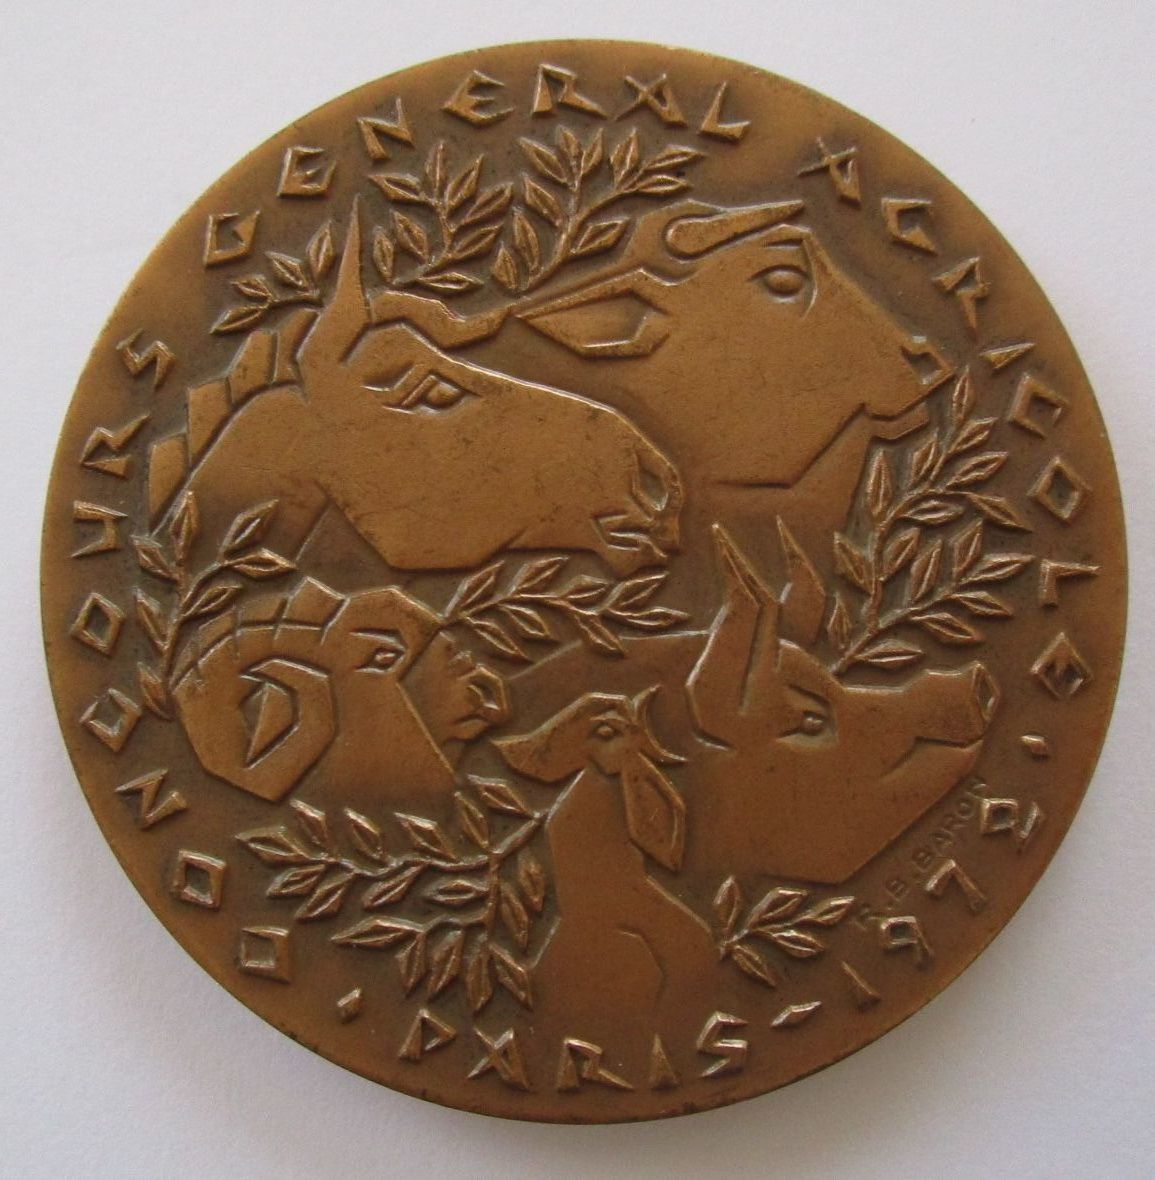 フランス パリ農業国際見本市 品評会 1972年 牛 馬 豚 鳥 メダル